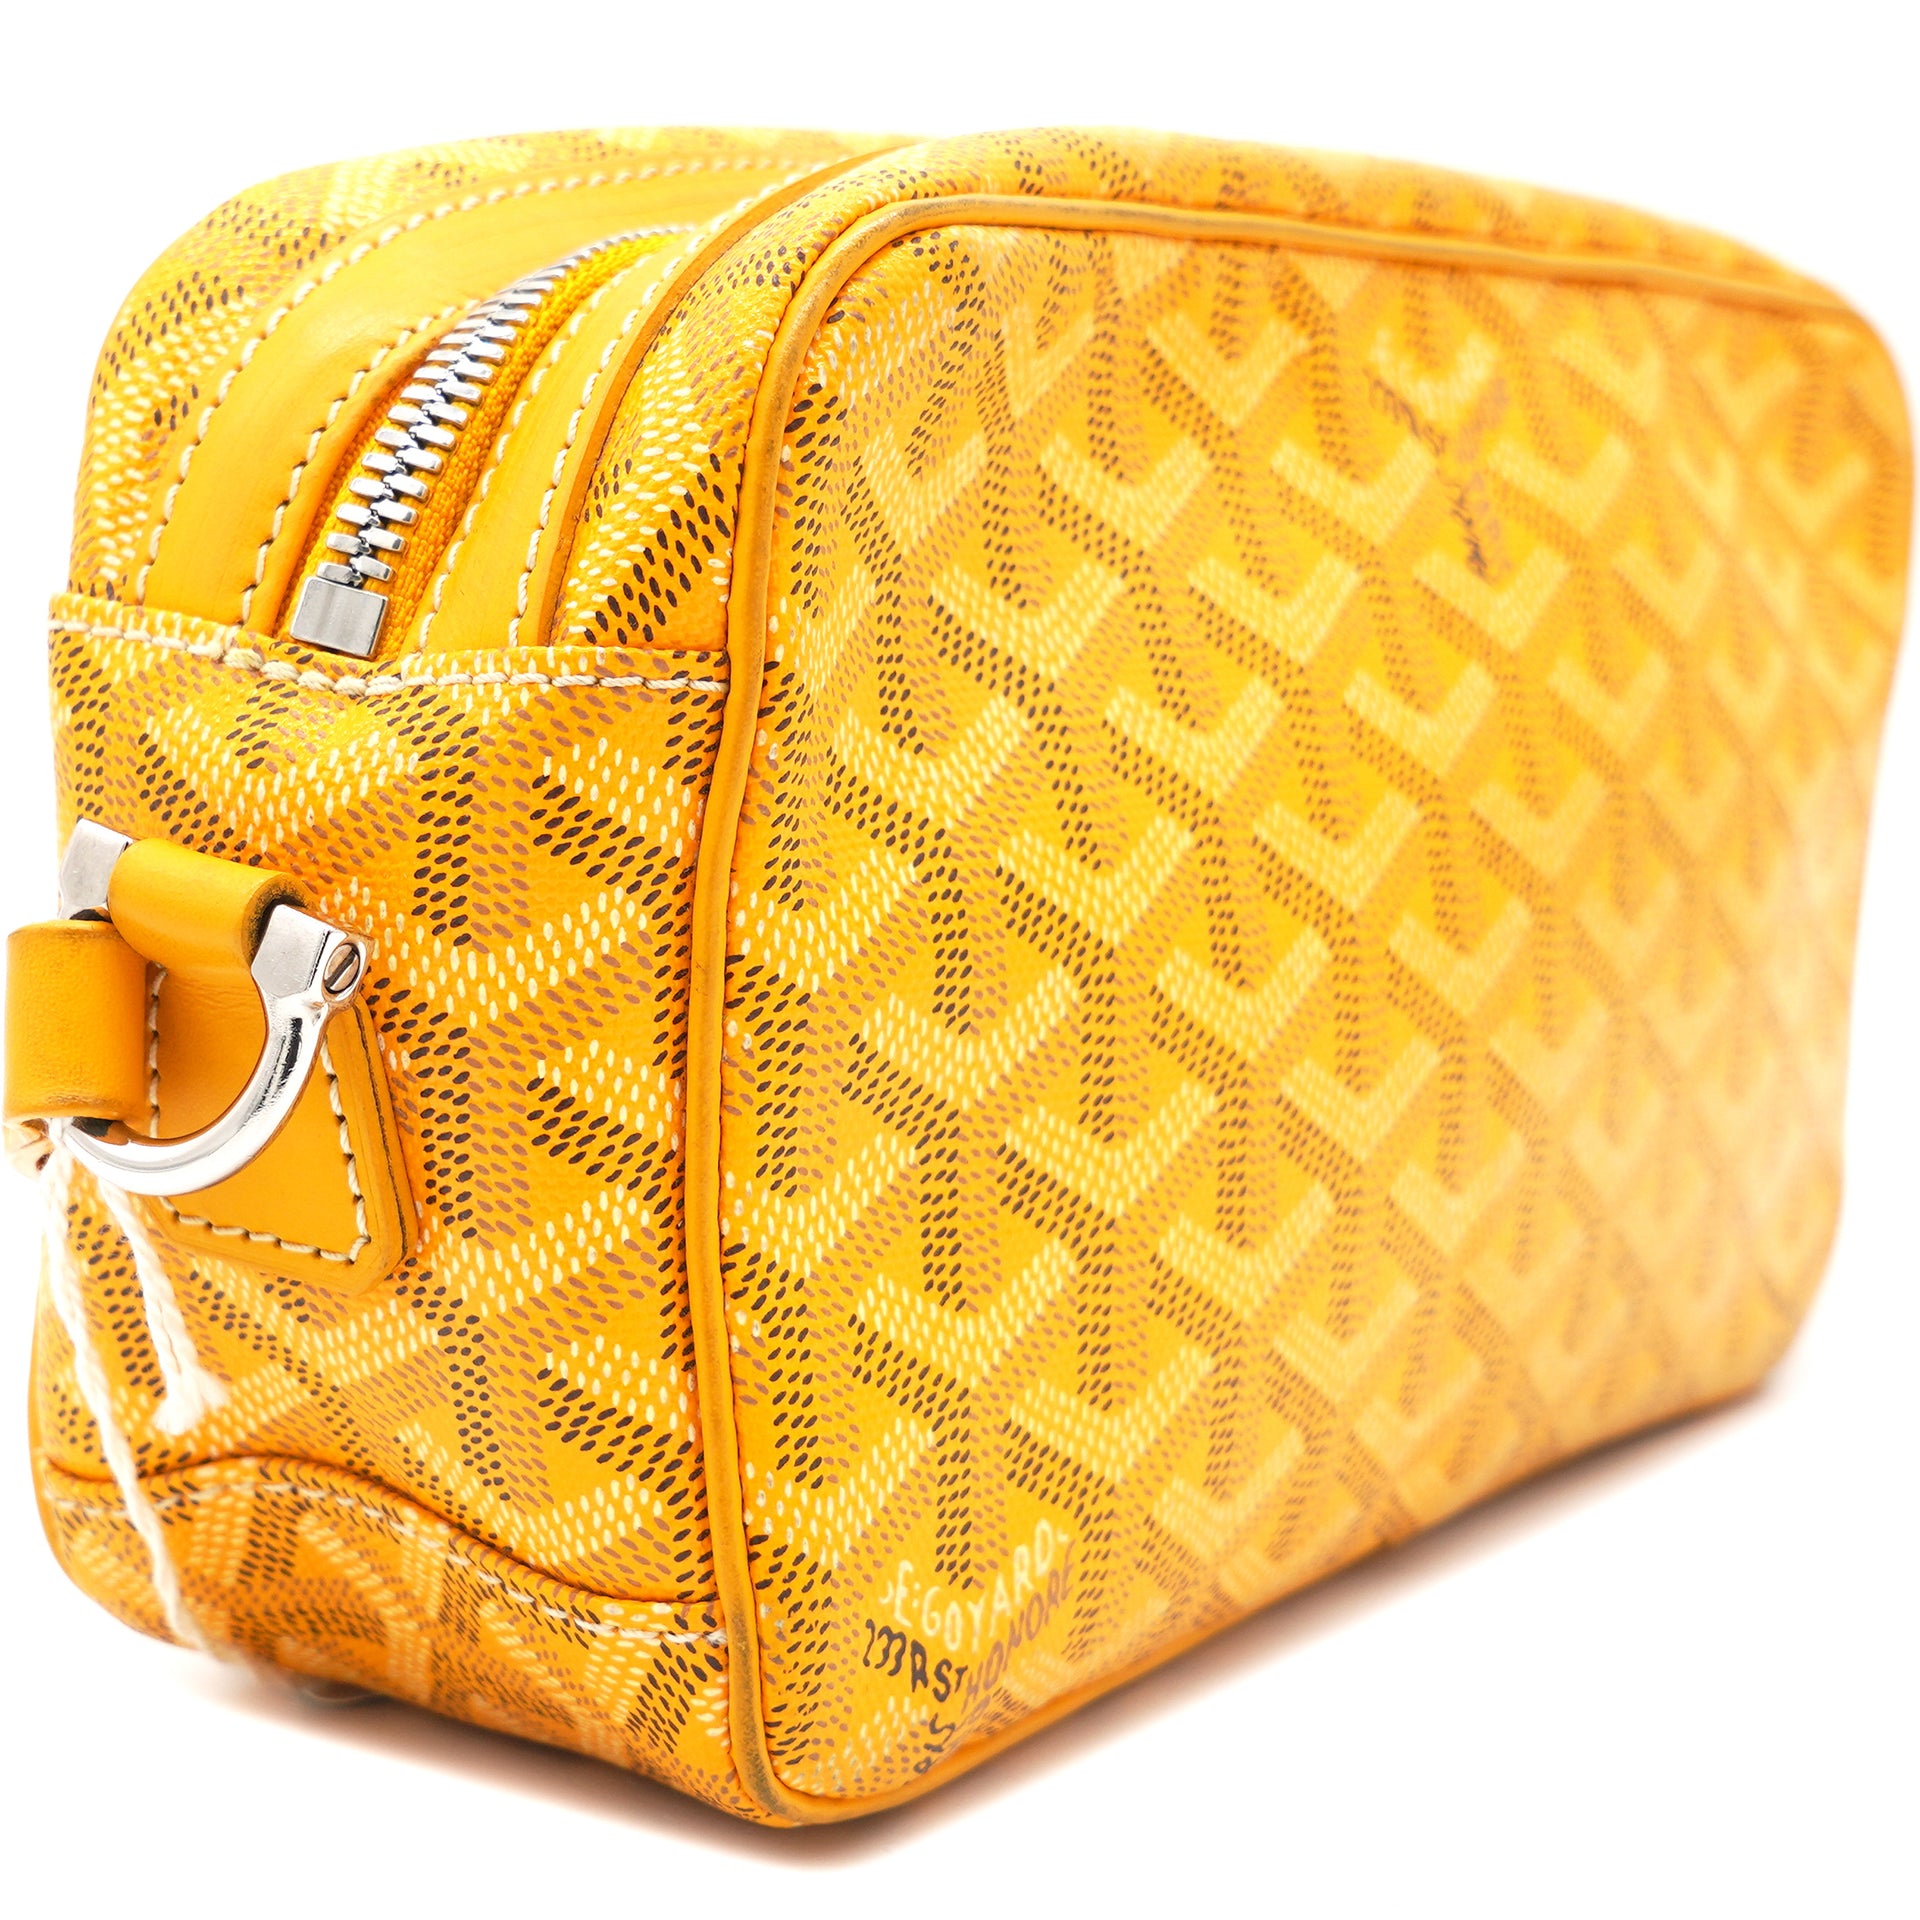 Goyard Goyardine Sac Cap Vert - Yellow Crossbody Bags, Handbags